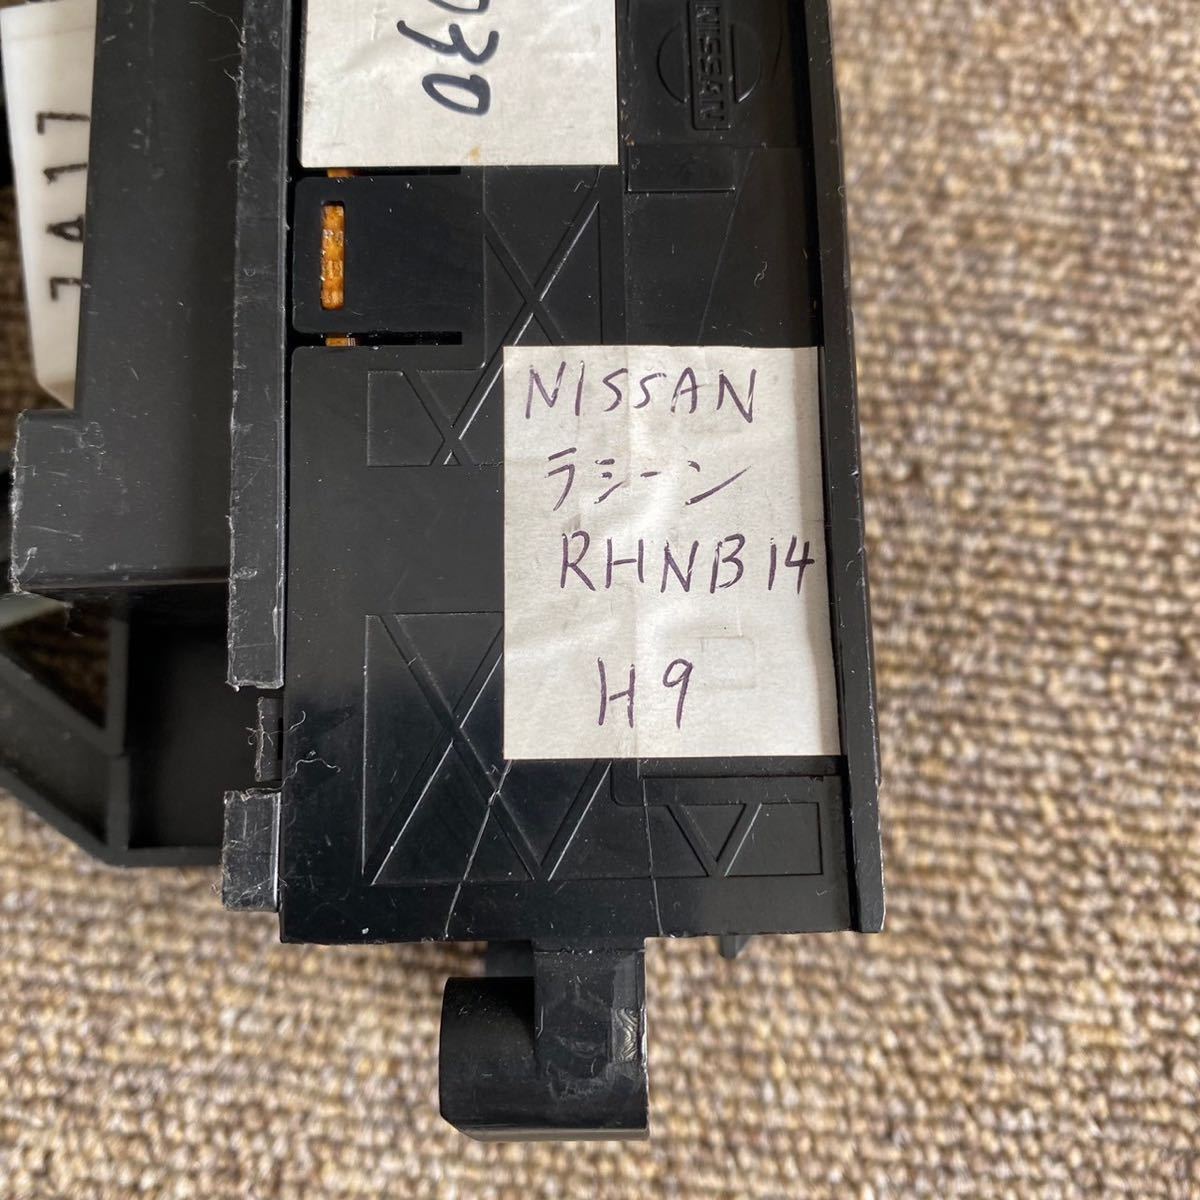  Nissan RFNB14 RFNB15 Rasheen оригинальный кондиционер panel выключатель кондиционера A/C переключатель manual NISSAN эпоха Heisei 9 год M011